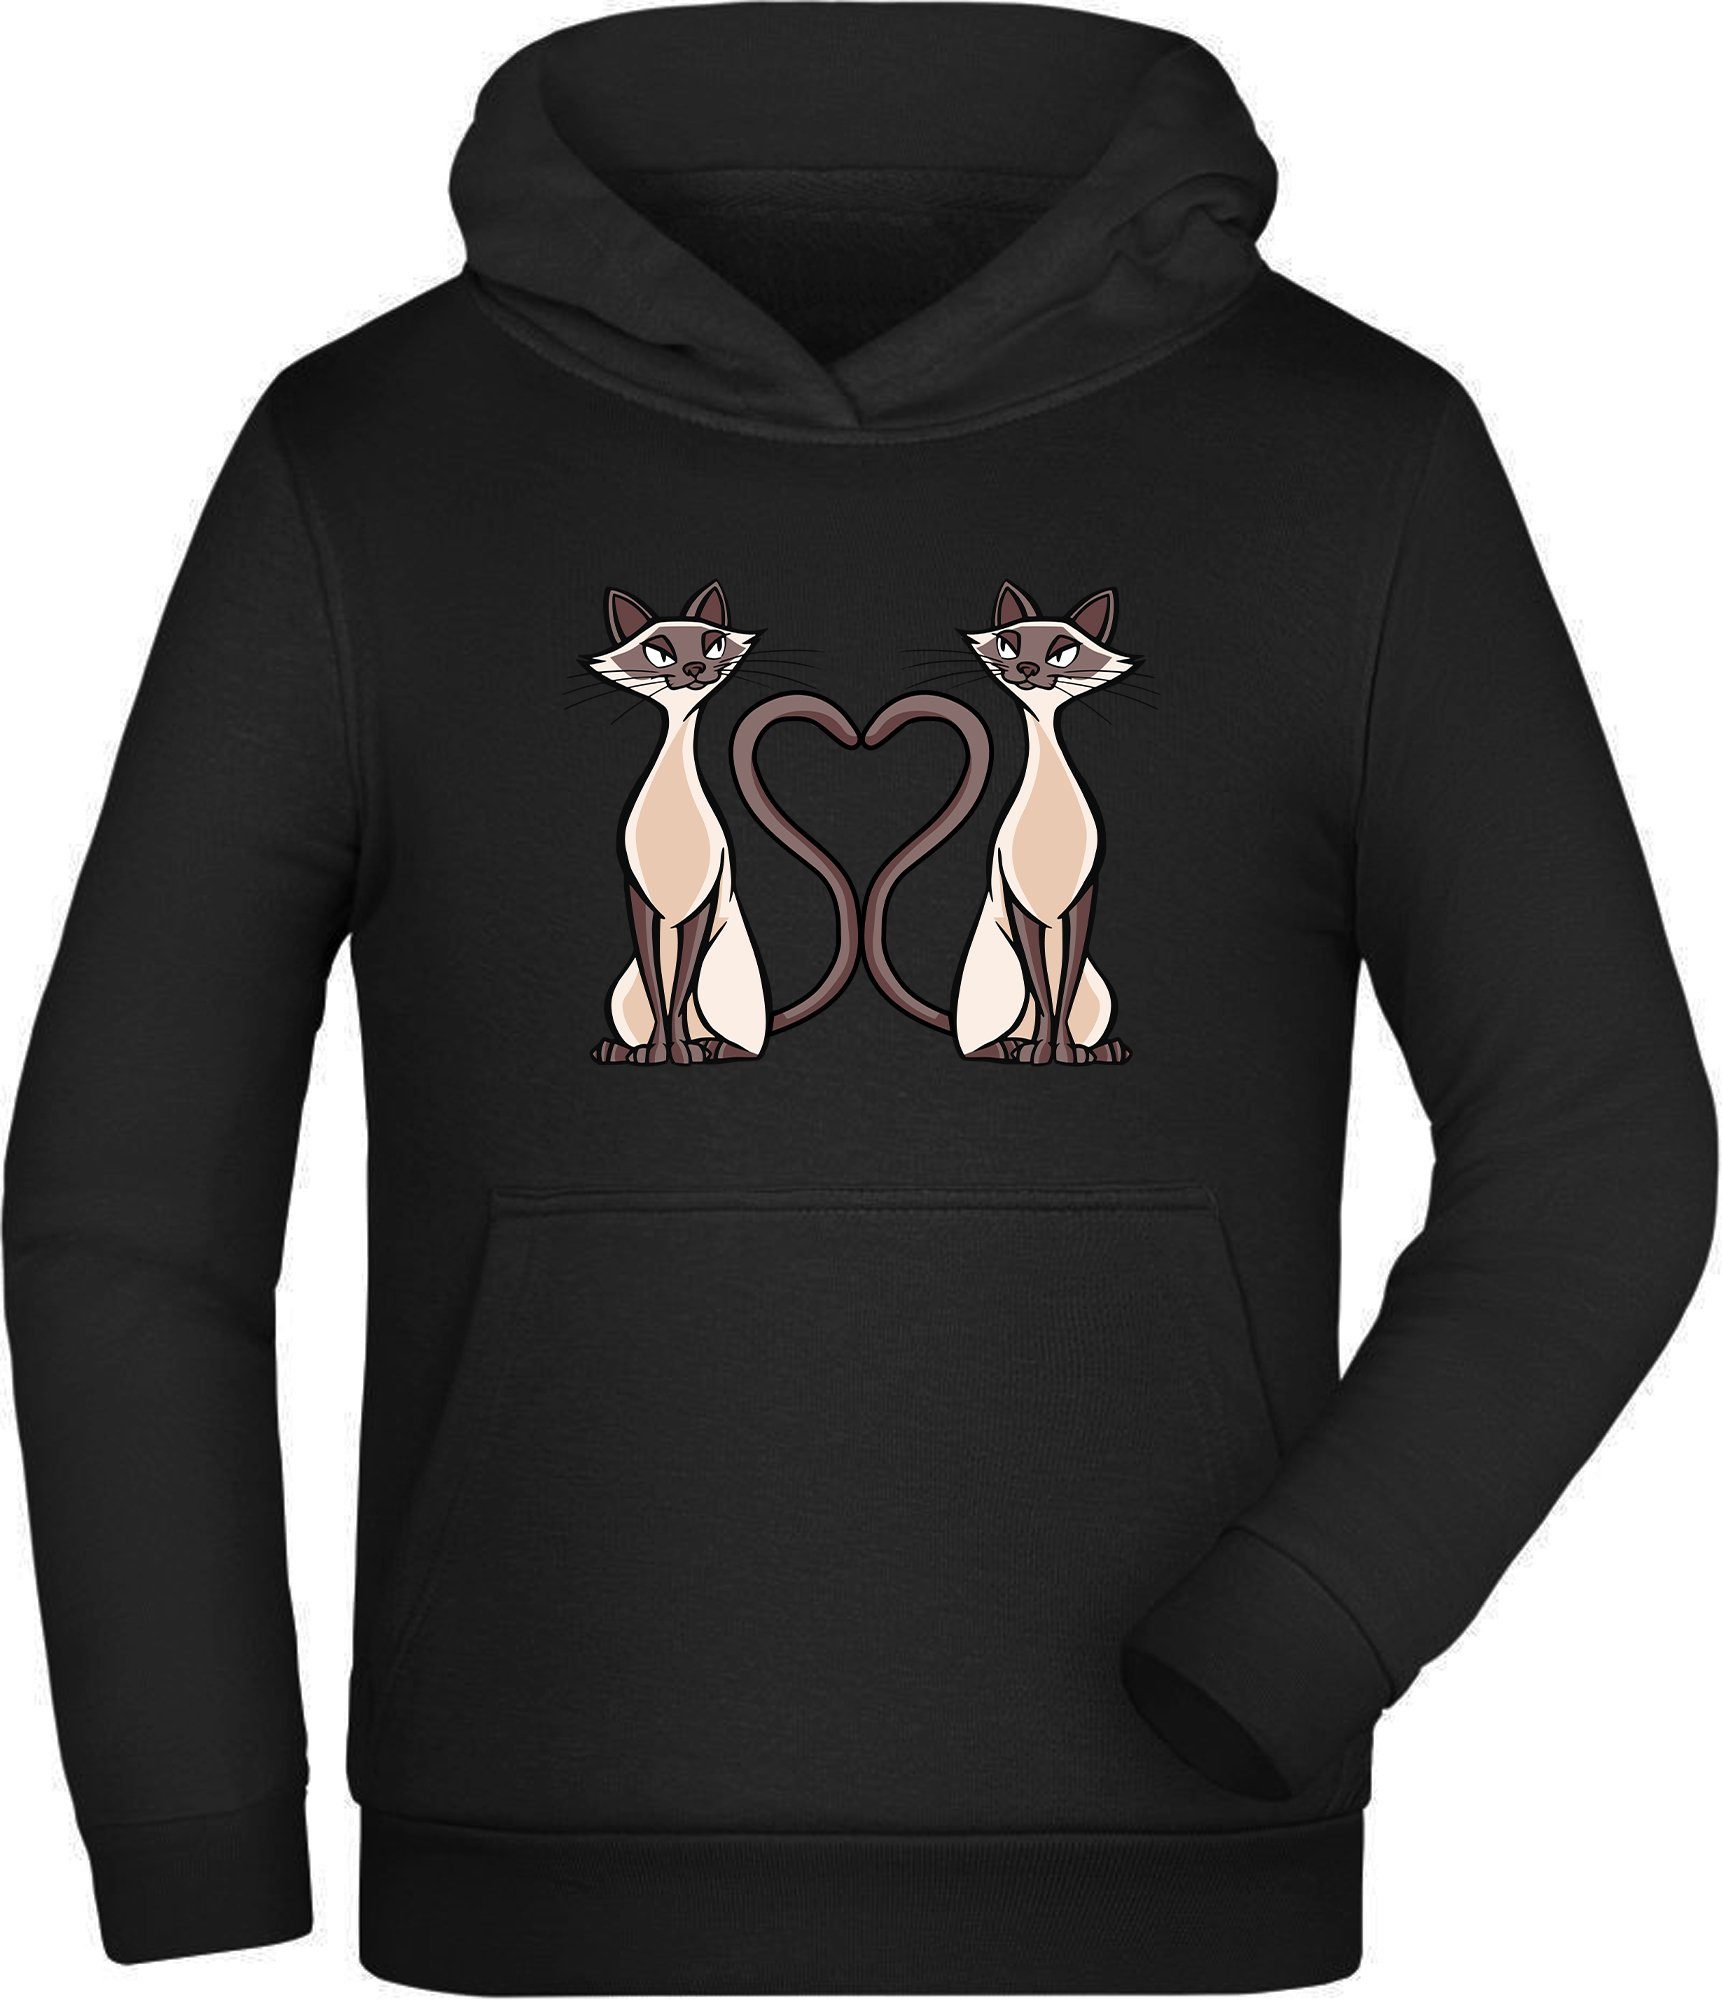 MyDesign24 Hoodie Kinder Kapuzen Sweatshirt - 2 Katzen mit Herz Schwanz Kapuzensweater mit Aufdruck, i115